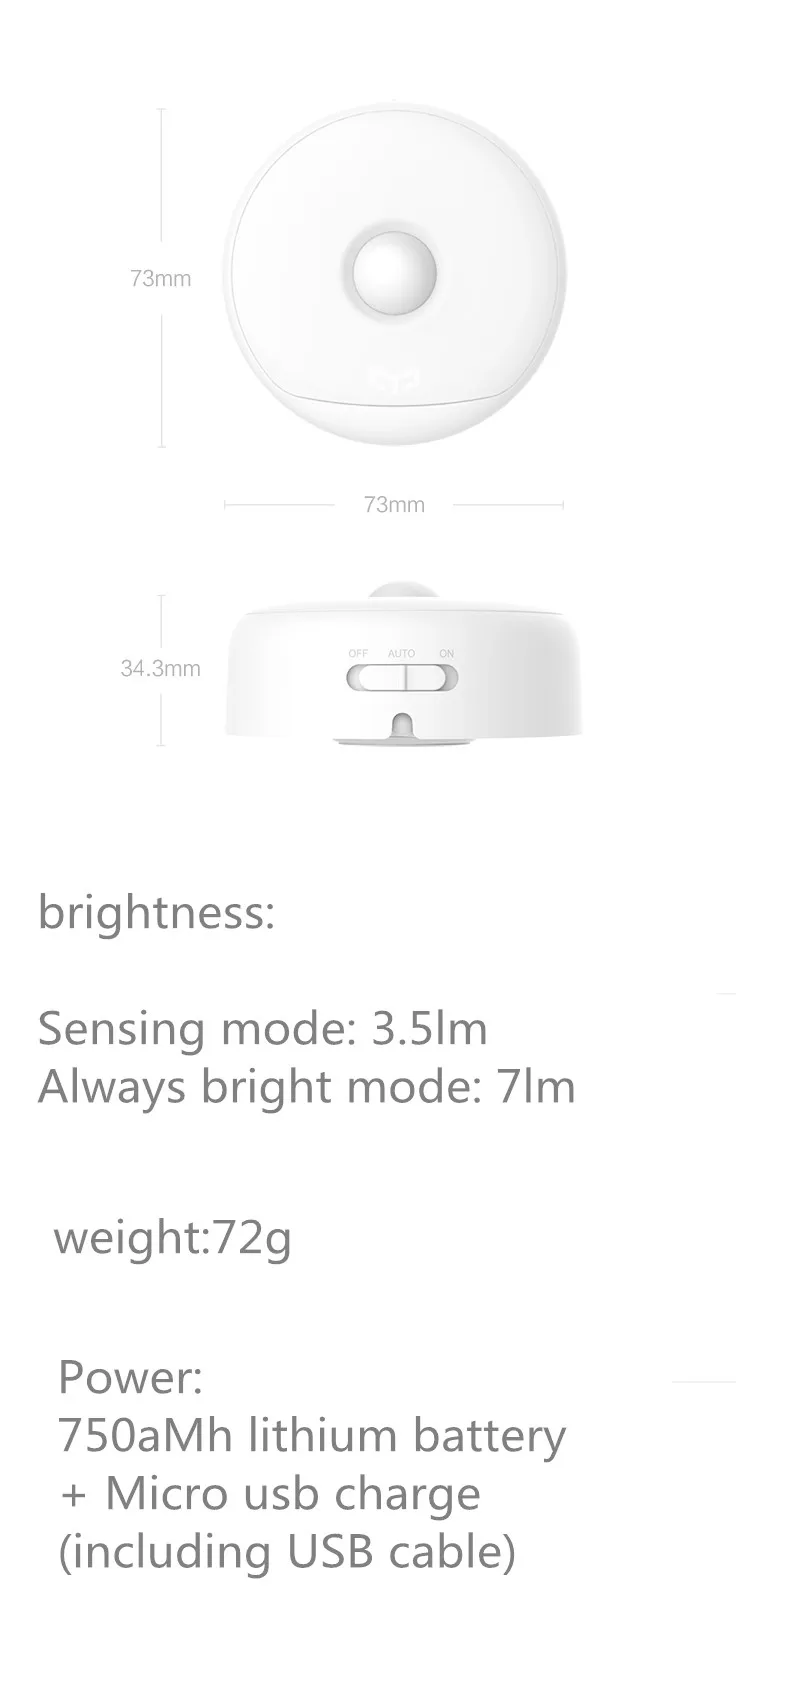 Xiaomi Mijia Yee светильник светодиодный ночной Светильник Инфракрасный магнитный пульт дистанционного управления датчик движения тела для Xiaomi умный дом(USB зарядка